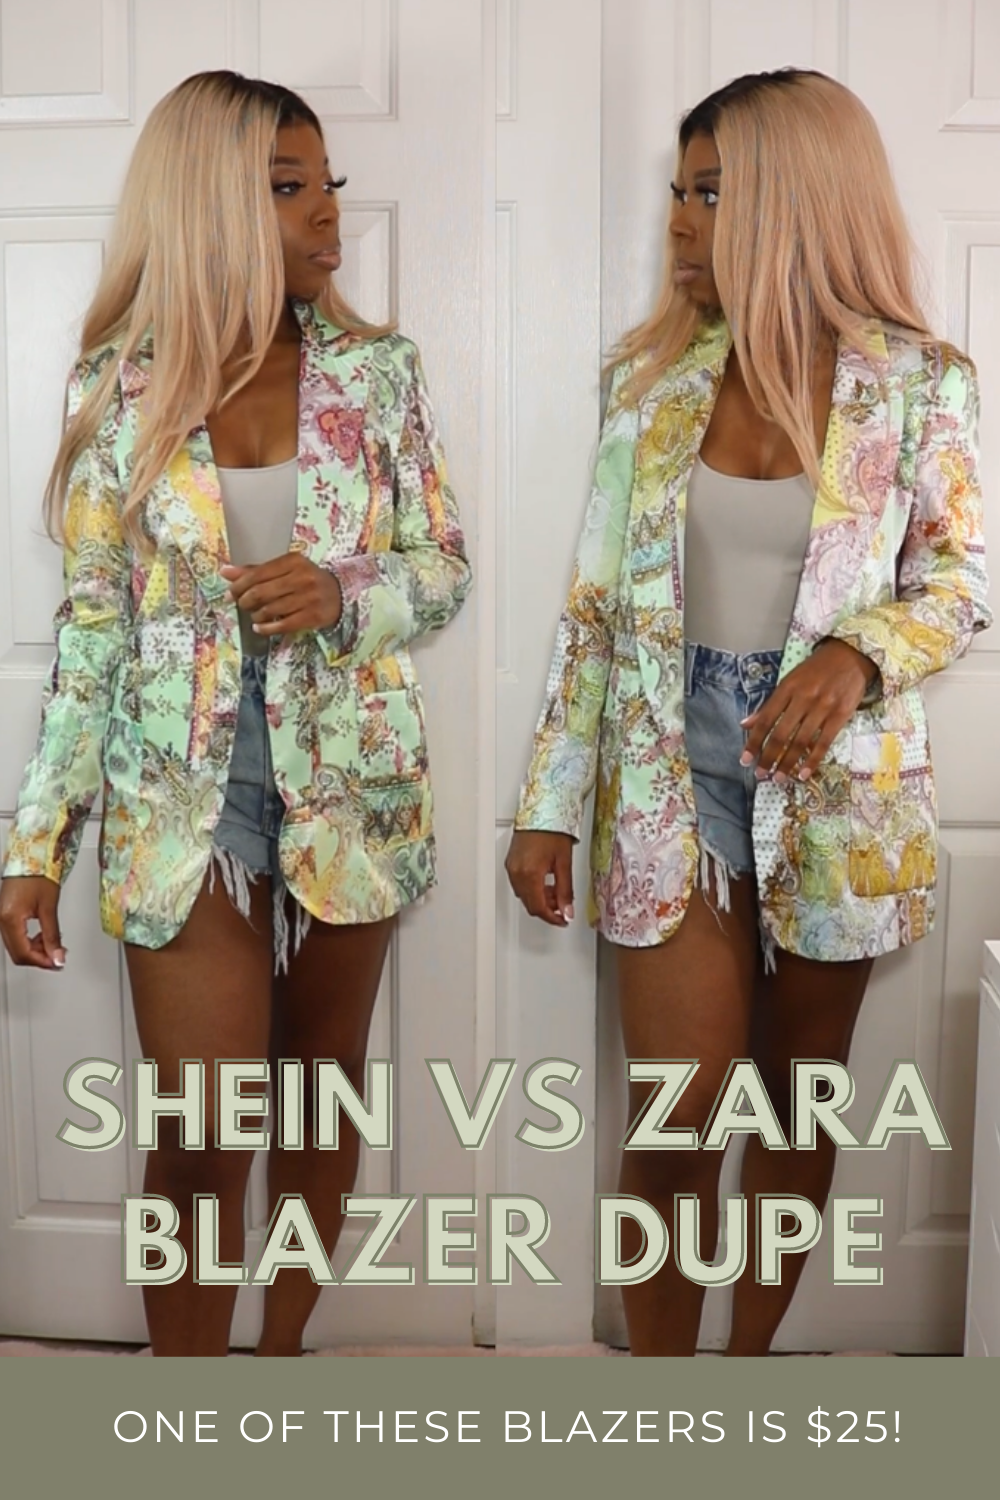 TikTok's Shameless Zara vs. SHEIN Obsession Is Bad for Fashion